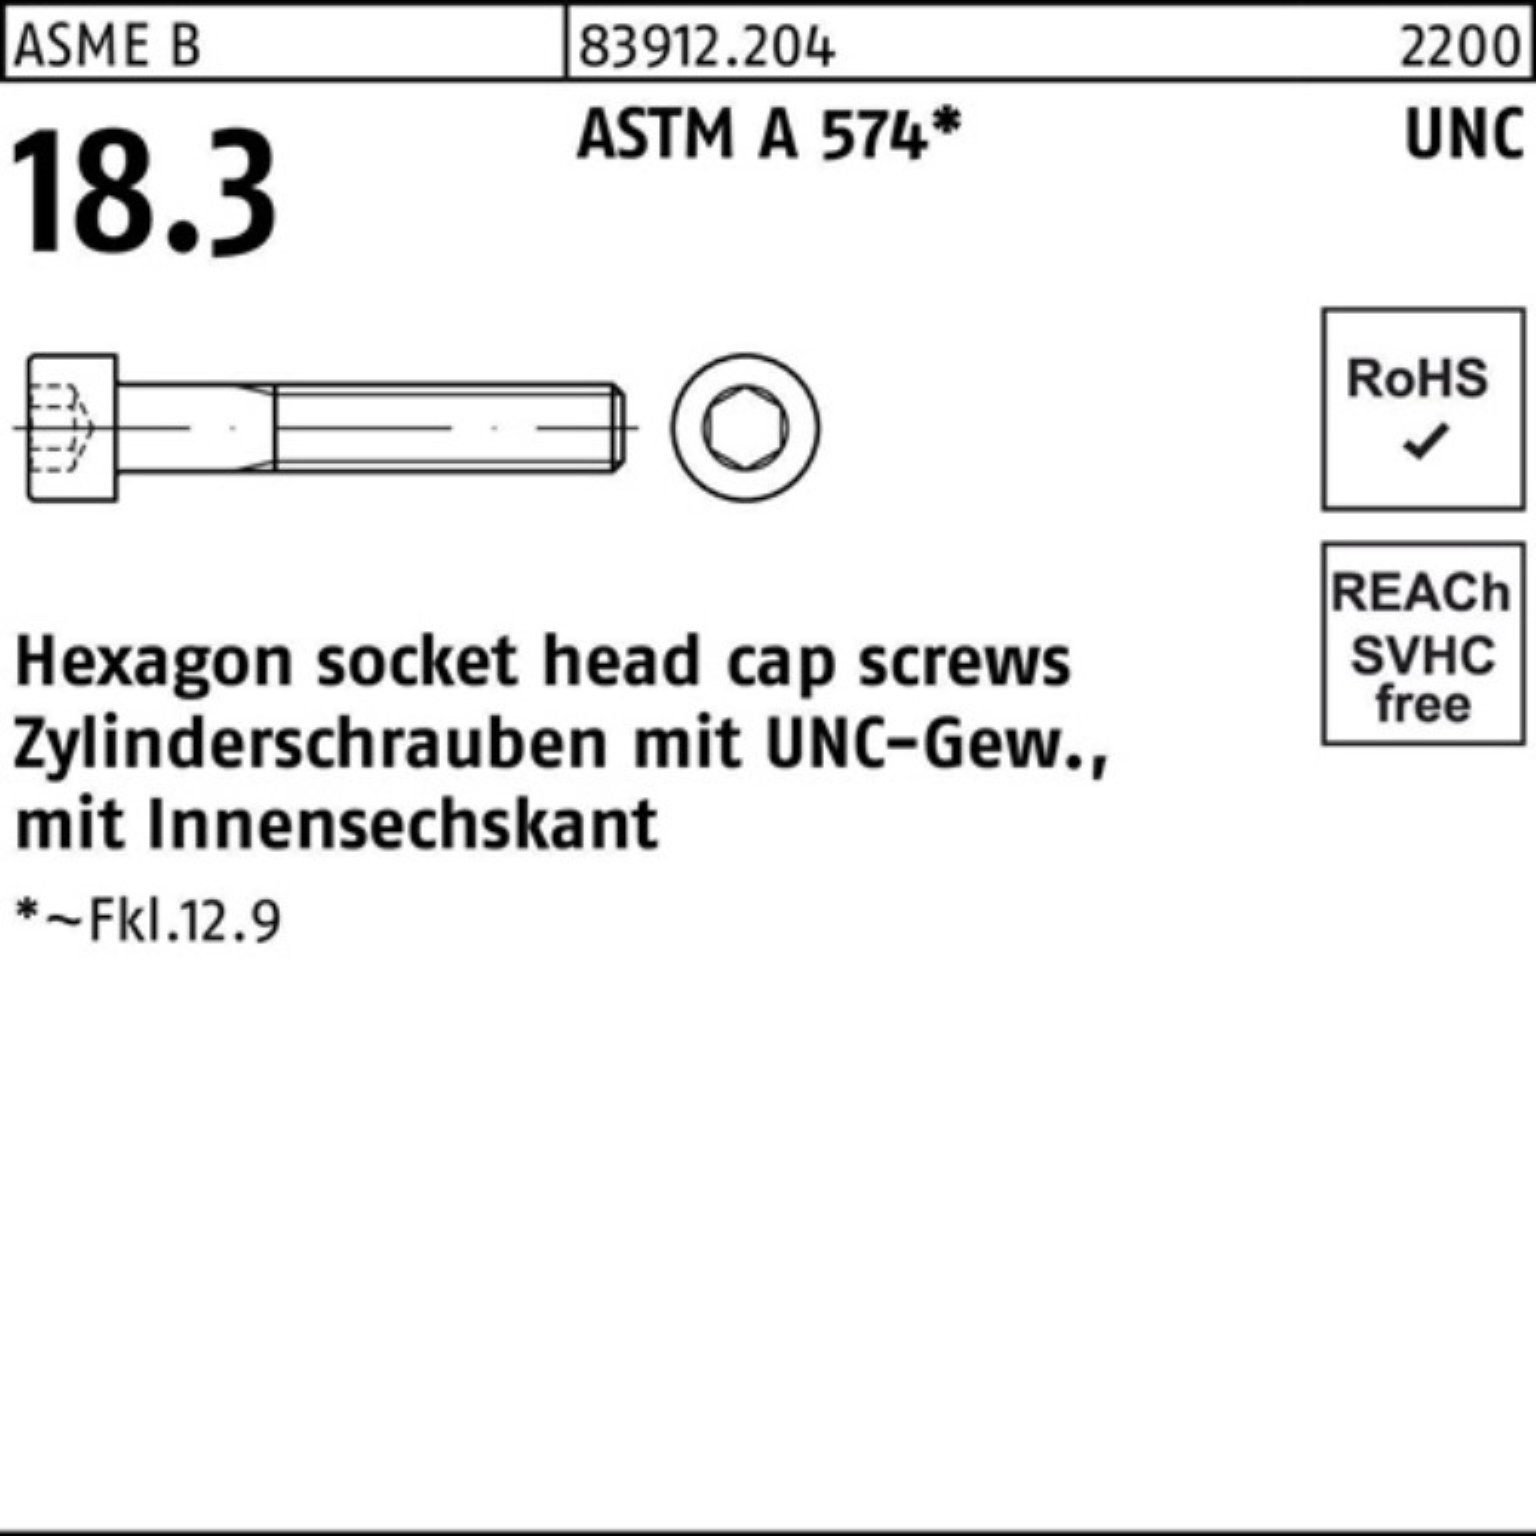 Zylinderschraube Zylinderschraube UNC-Gewinde/Innen-6kt R 4 Reyher 1x 1/2 Pack 100er AST 83912